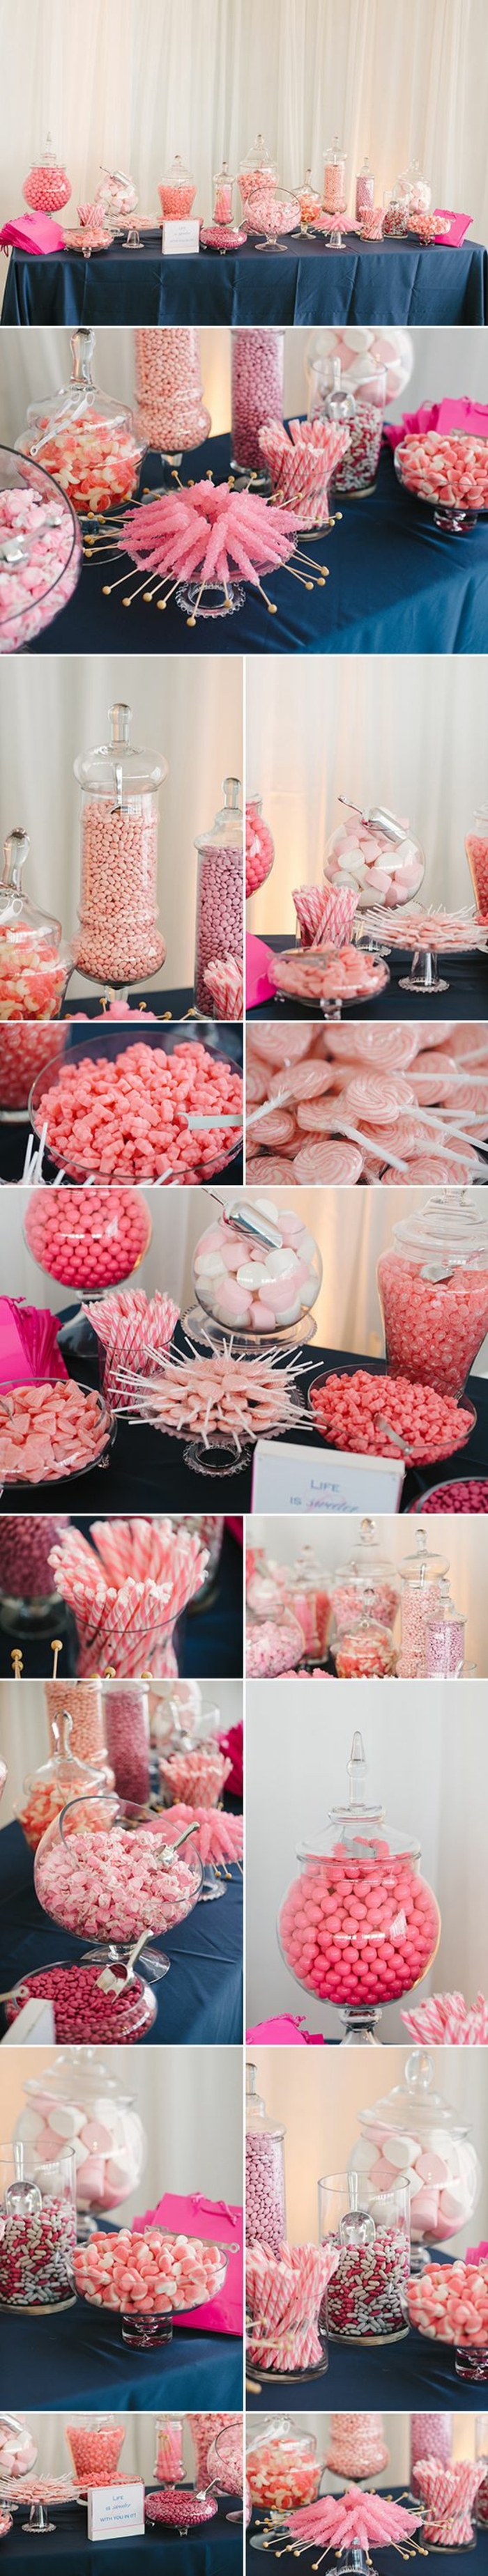 candy bar mariage à faire soi meme, bonbons couleur rose, dragées, guimauves, gélifiées, réglisses, boules de gomme, sucettes, nappe bleue, fond rideau blanc